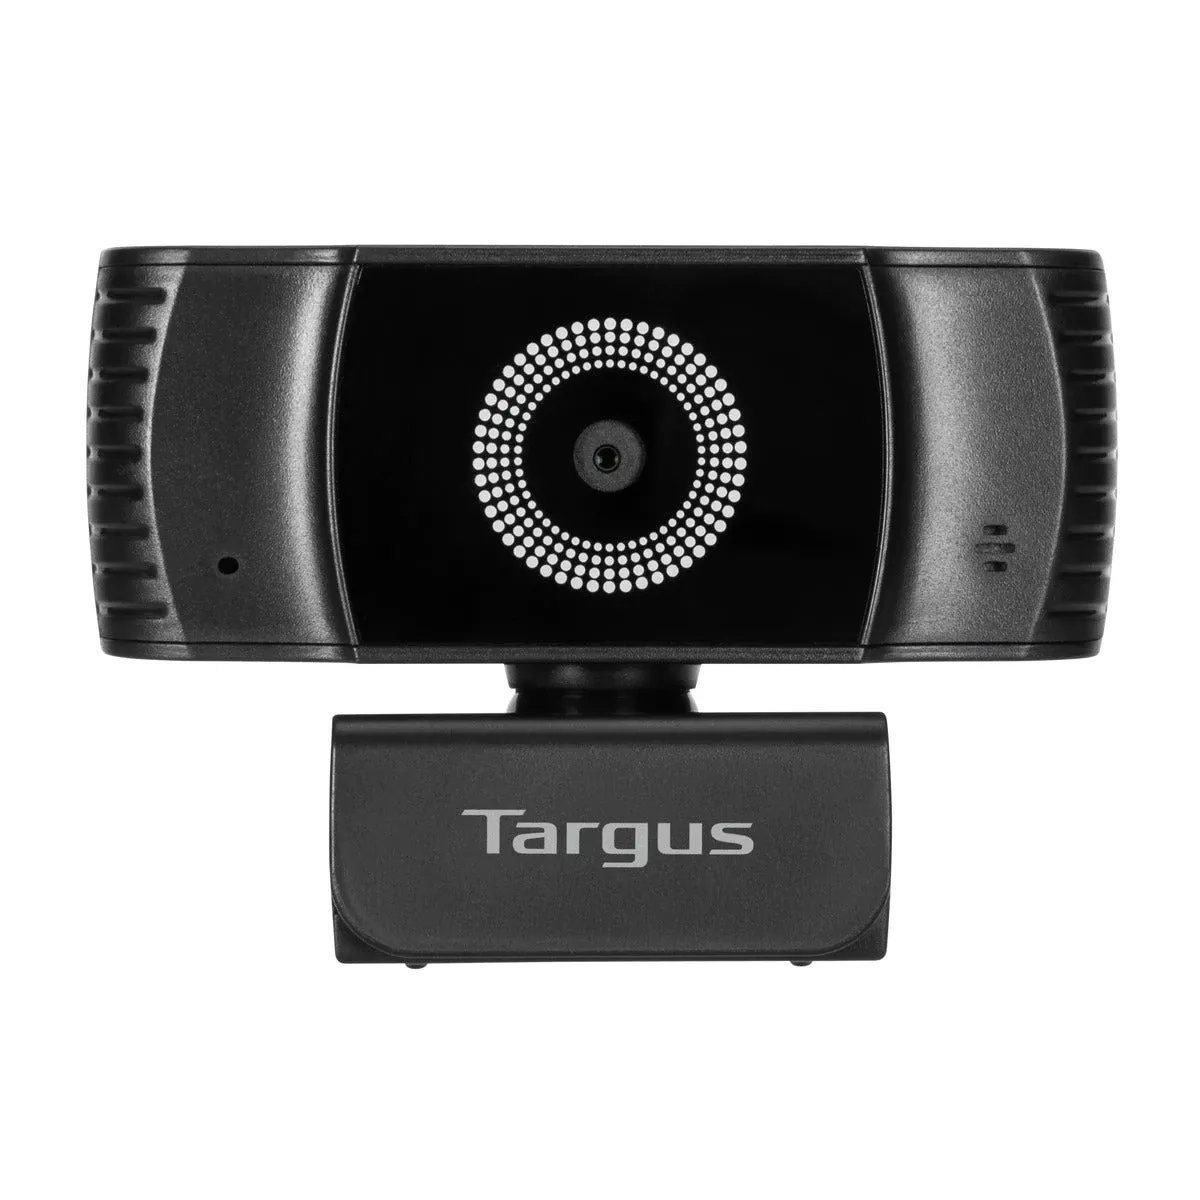 Achat TARGUS Webcam Plus Full HD 1080p Webcam with Auto au meilleur prix